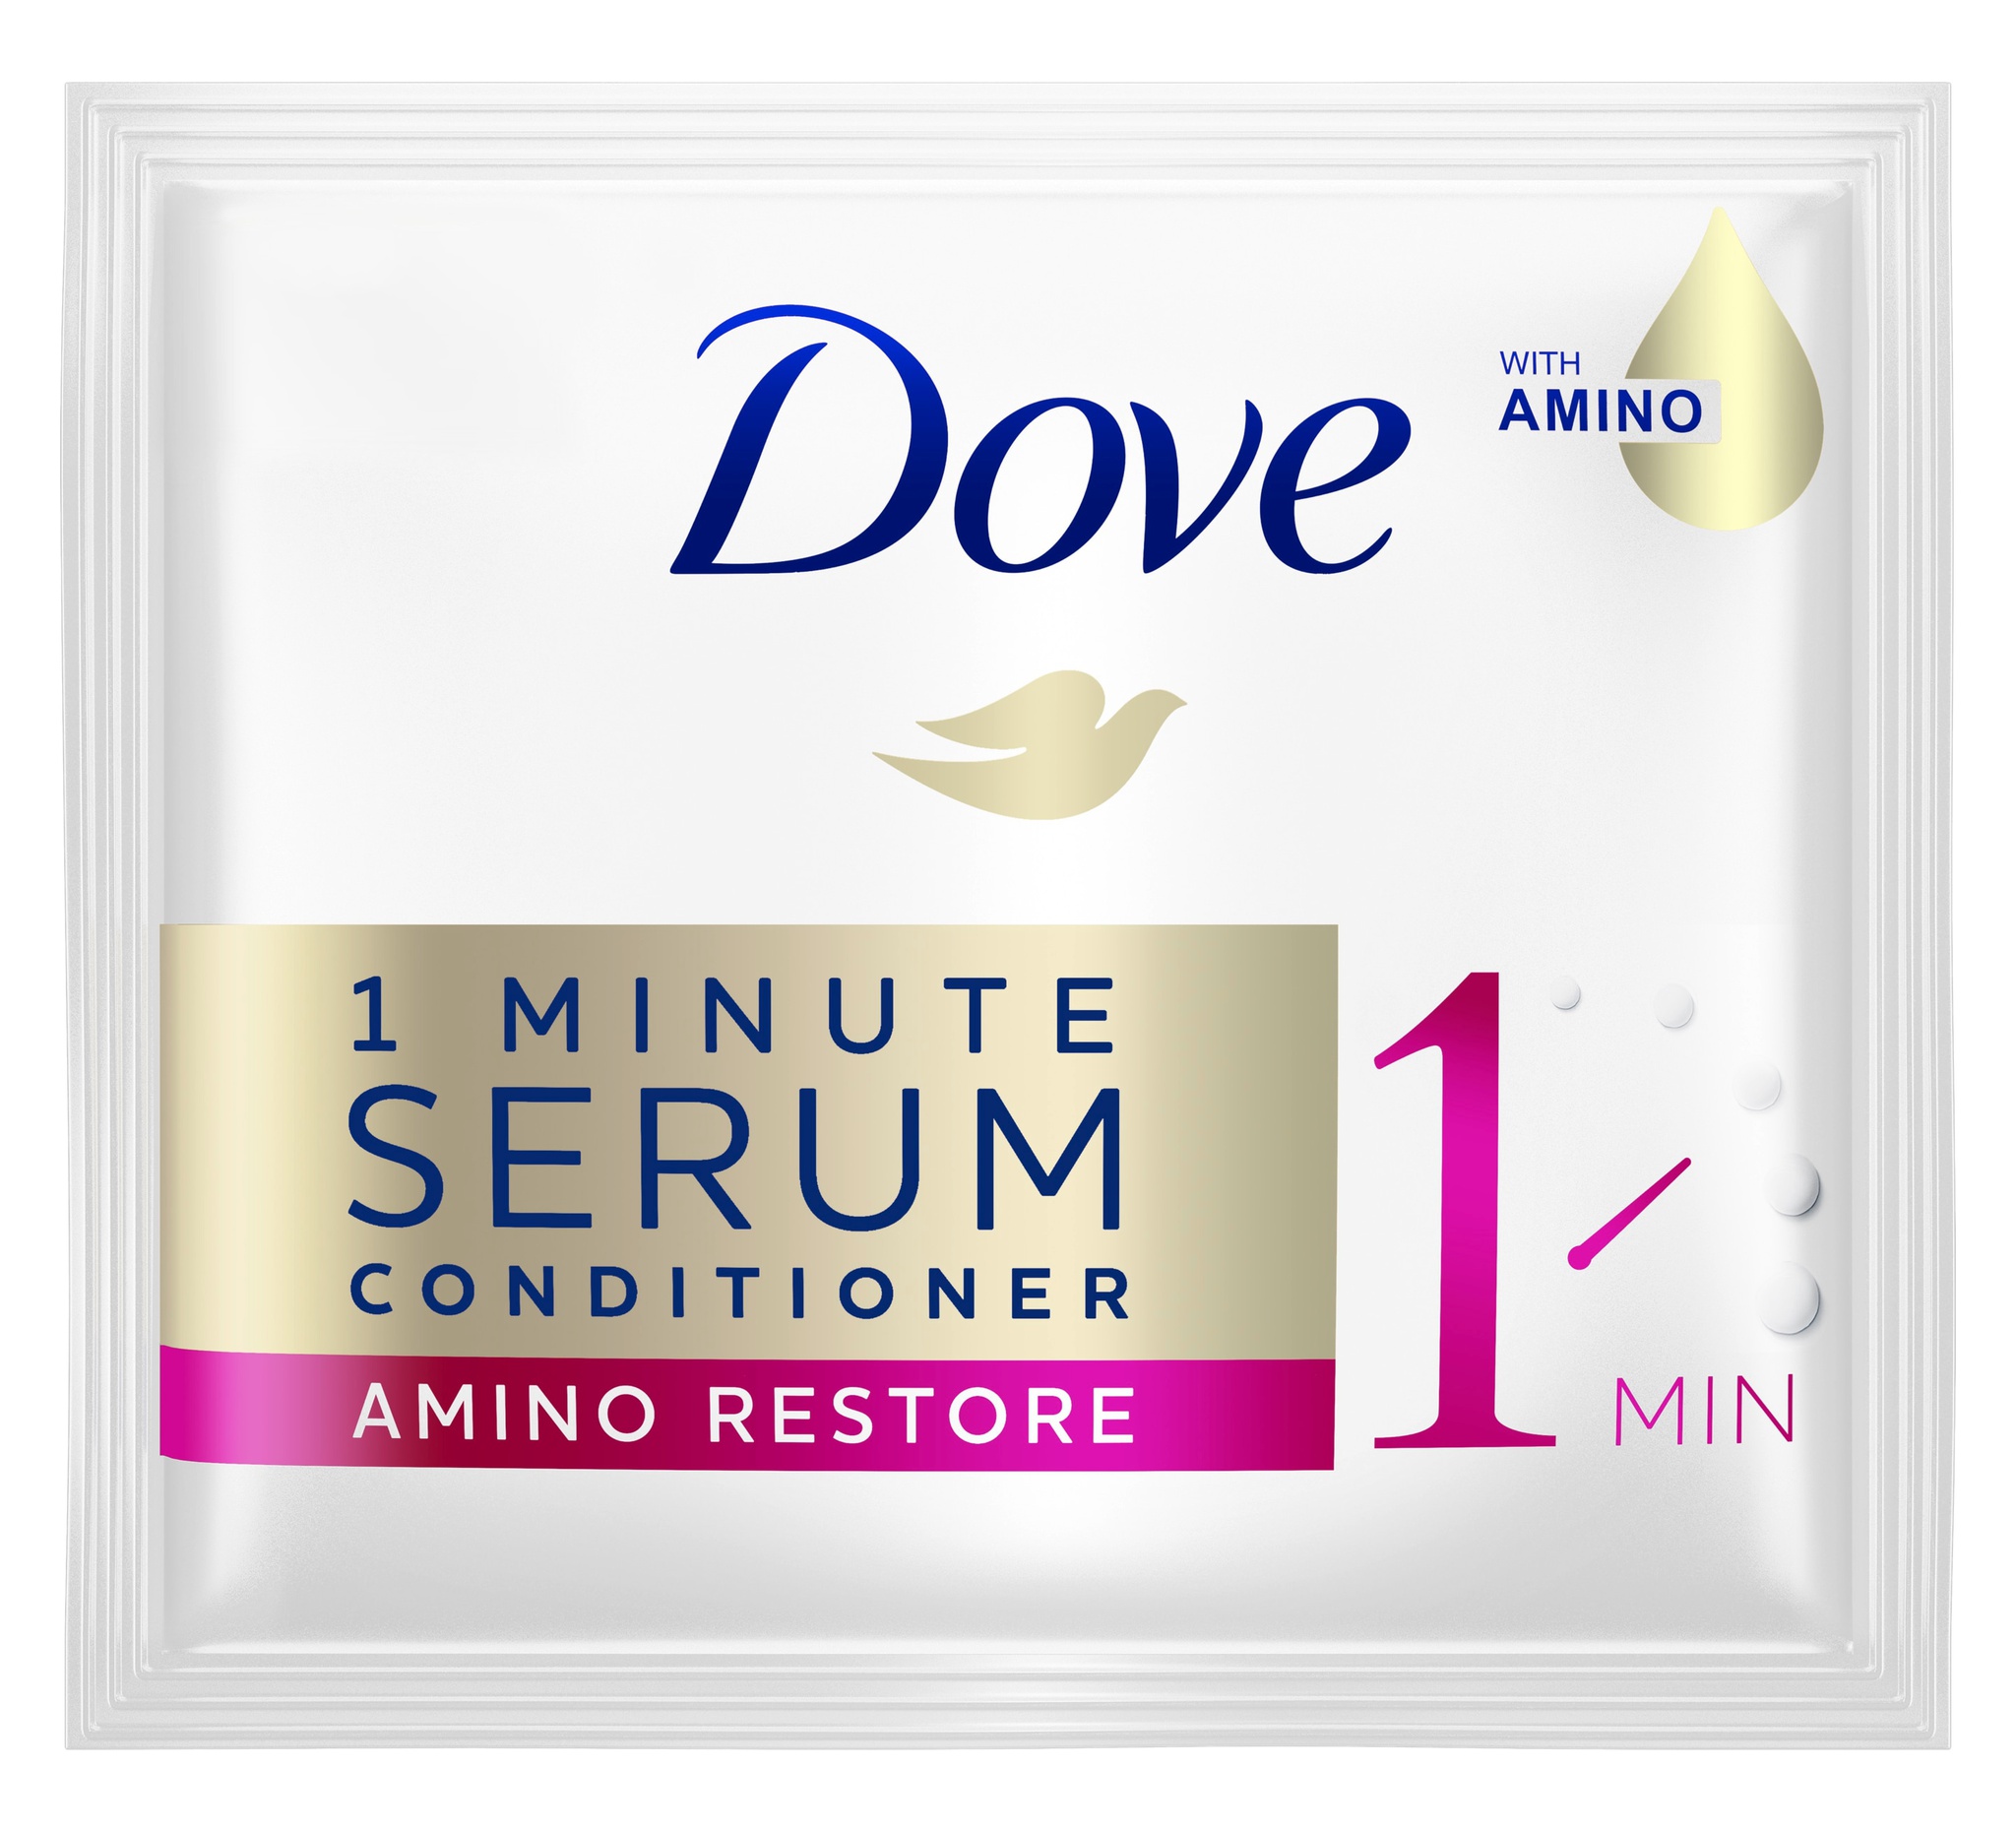 Dove 1 Minute Serum Conditioner Amino Restore